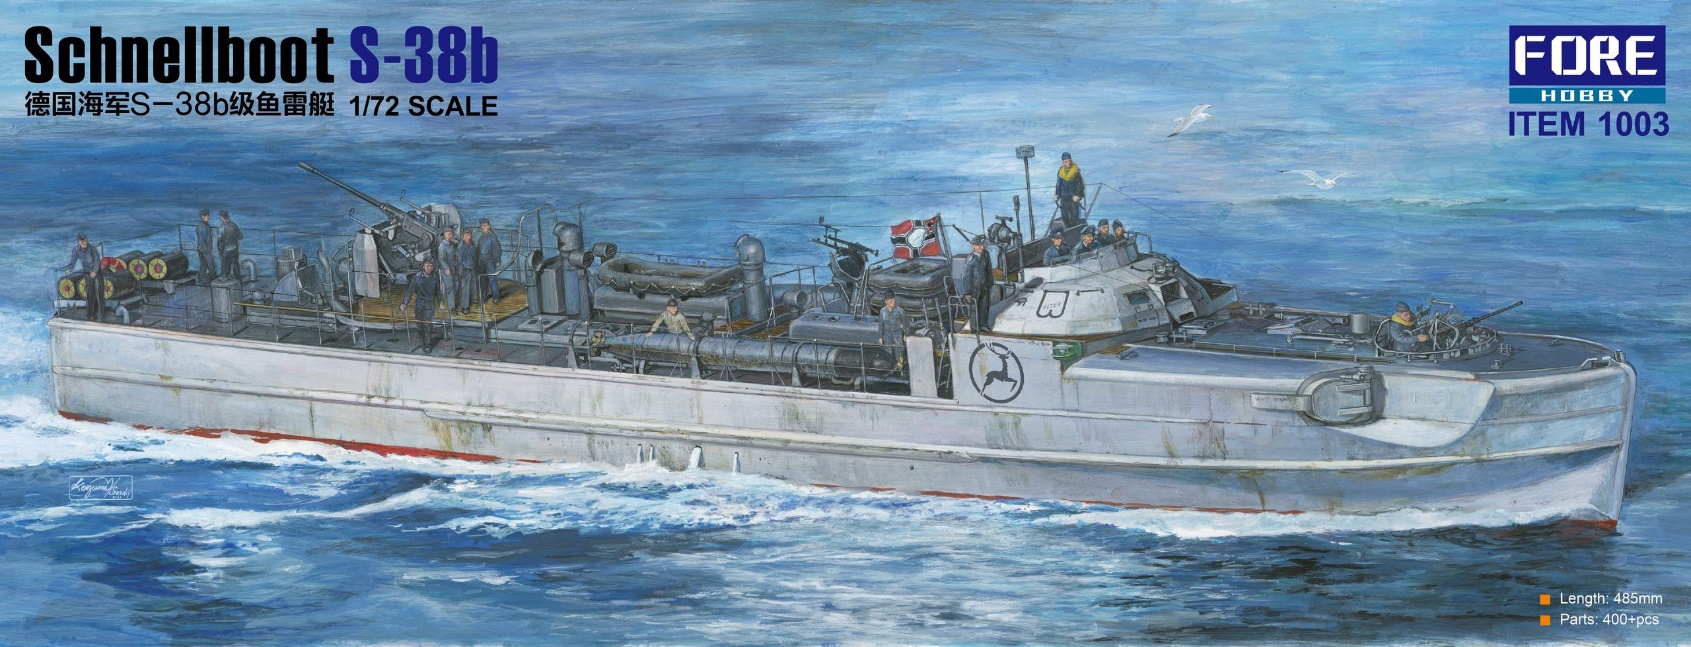 1/72 ドイツ海軍 シュネルボート S-38b型 高速戦闘艇 - ウインドウを閉じる